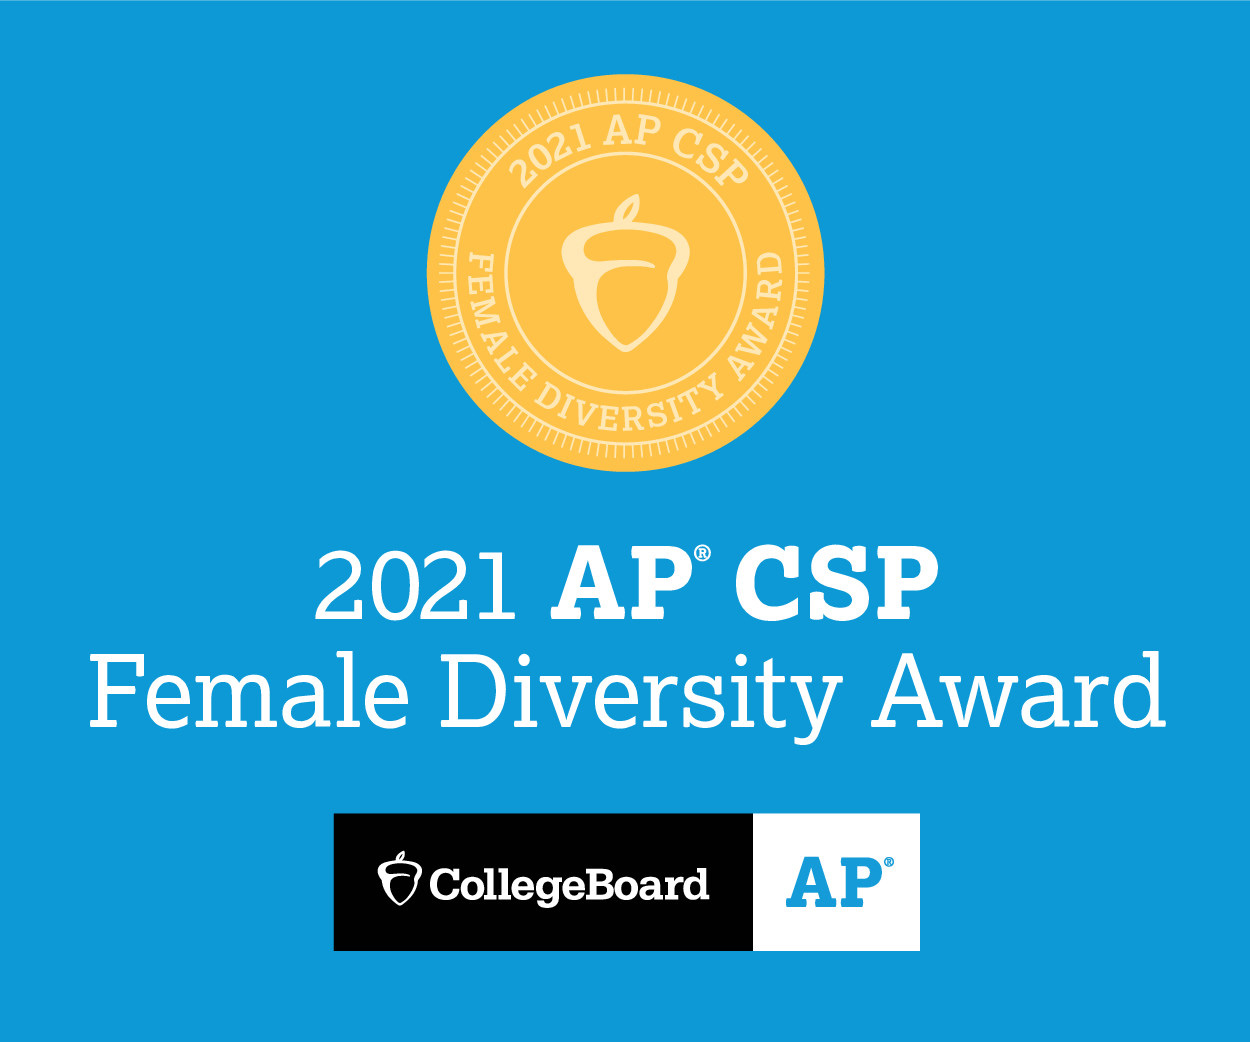 Award Icon for 2021 AP CSP Female Diversity Award